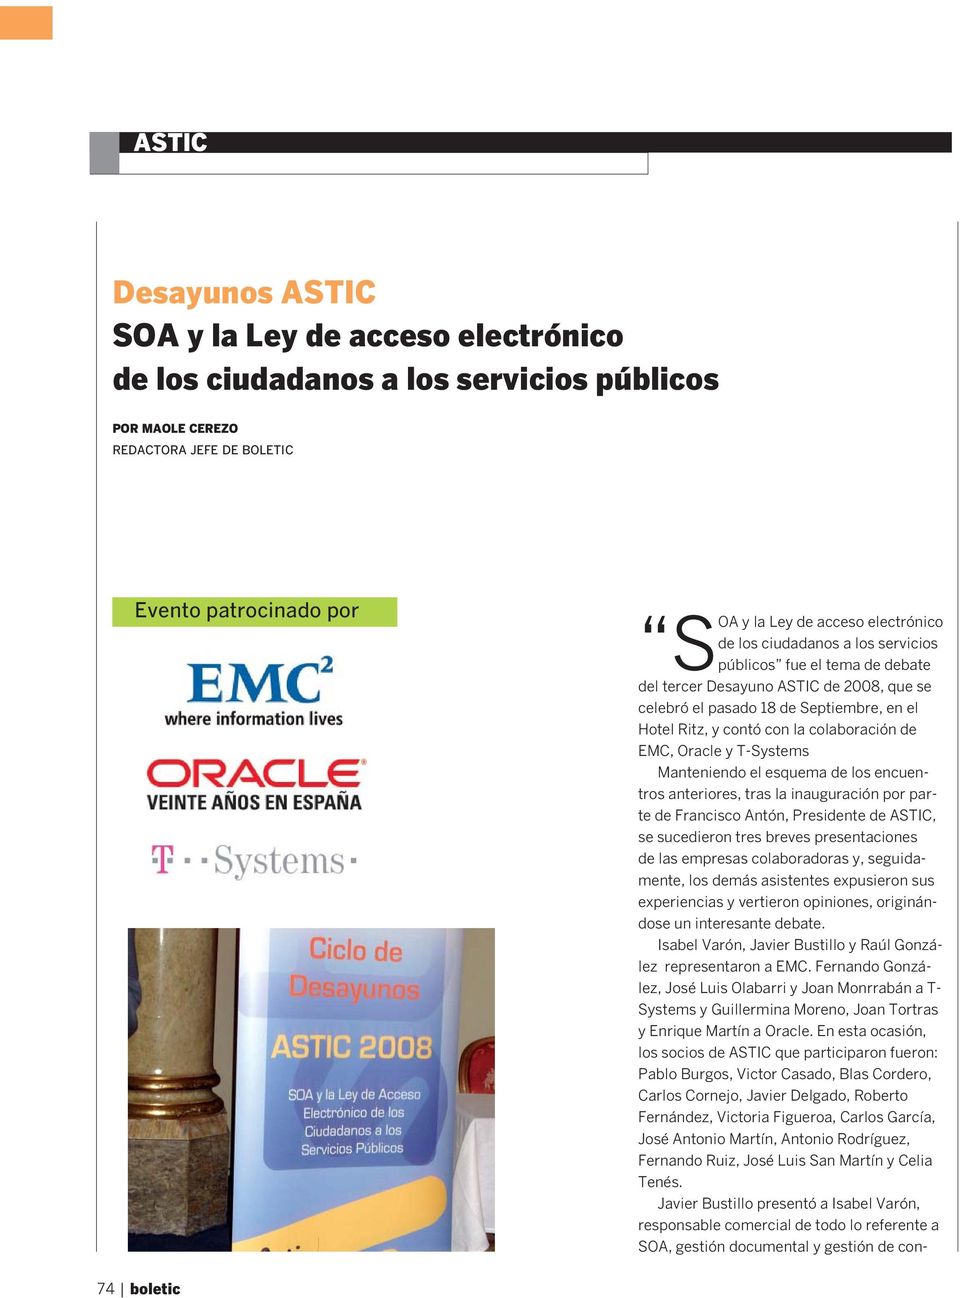 Oracle y T-Systems Manteniendo el esquema de los encuentros anteriores, tras la inauguración por parte de Francisco Antón, Presidente de ASTIC, se sucedieron tres breves presentaciones de las